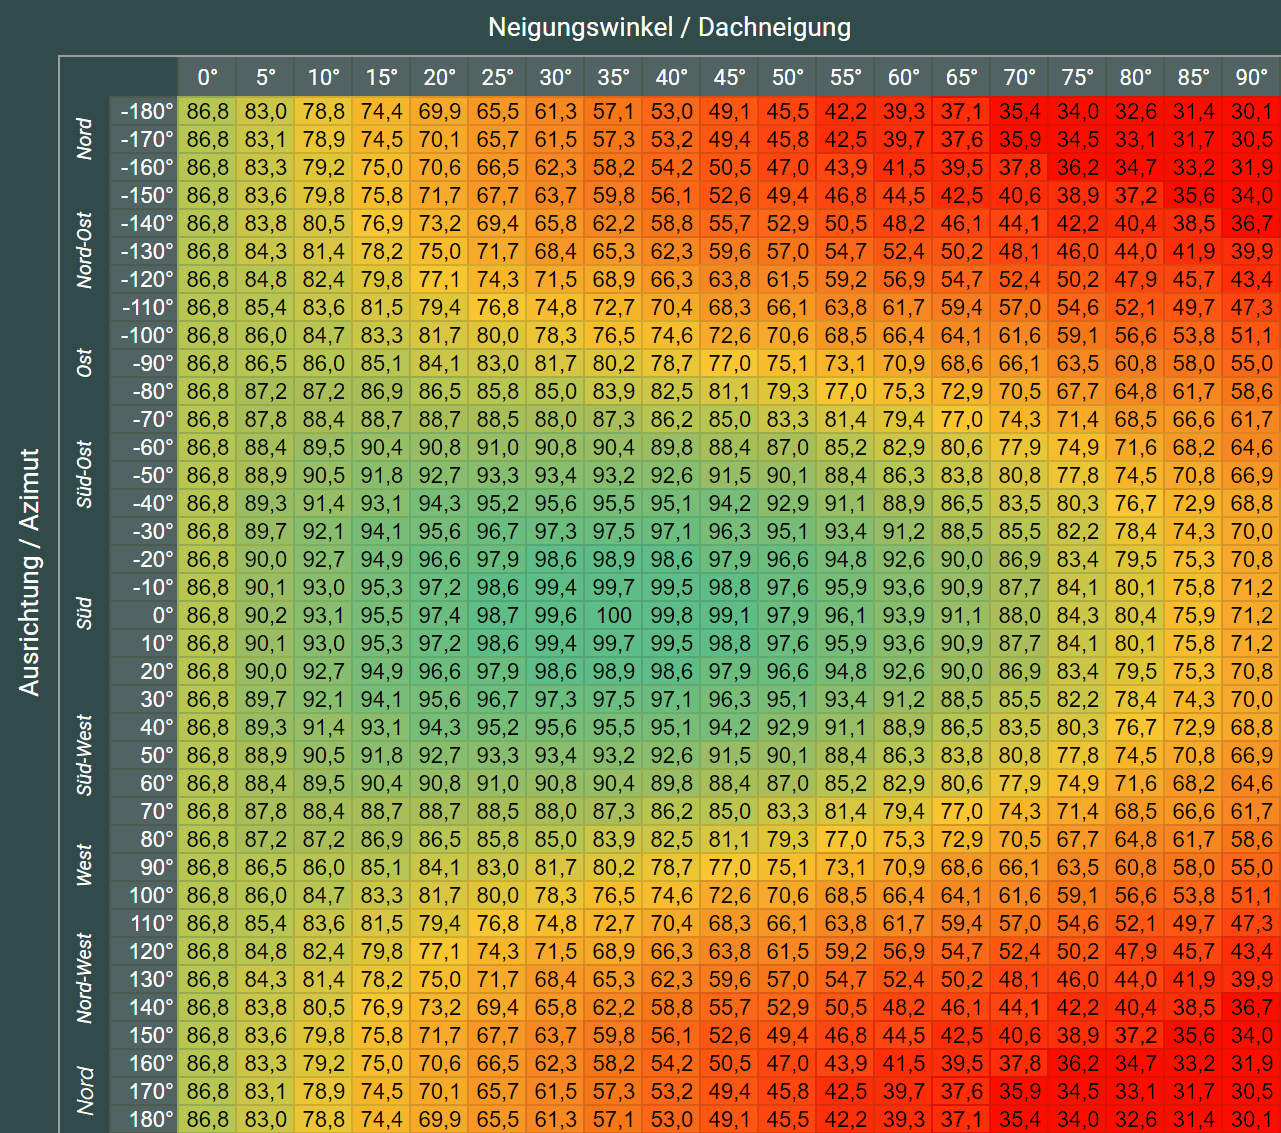 Photovoltaik Neigungswinkel Tabelle für Deutschland